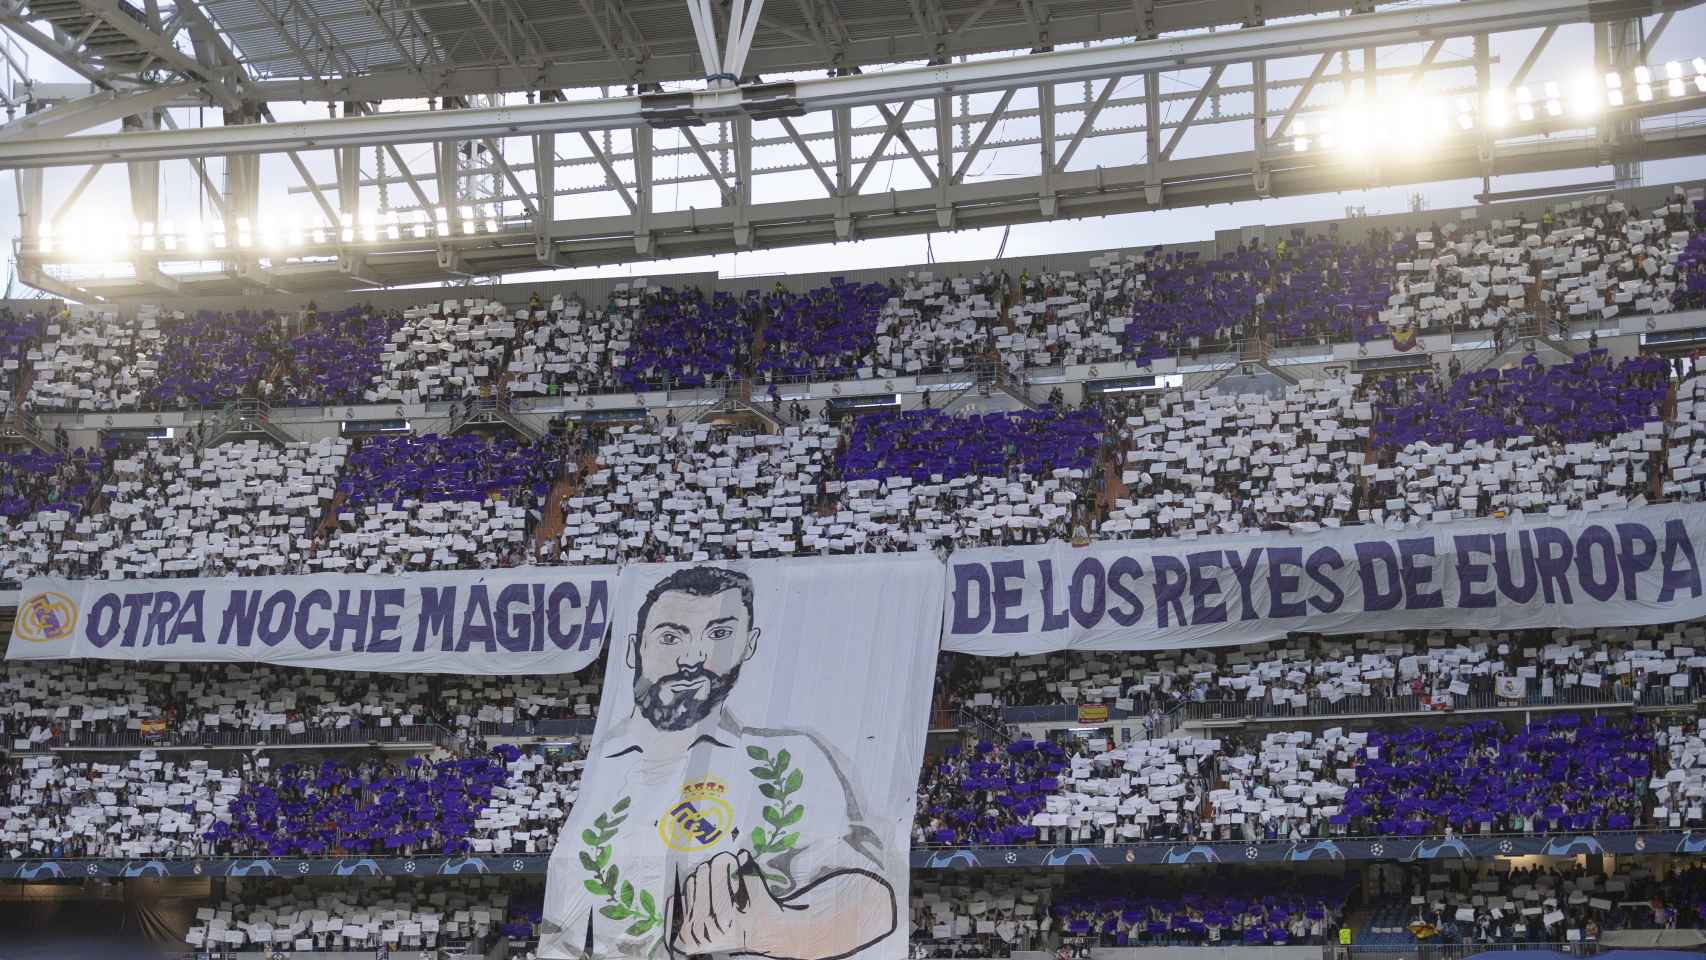 Otra noche mágica de los Reyes de Europa, el tifo del Real Madrid - Manchester City